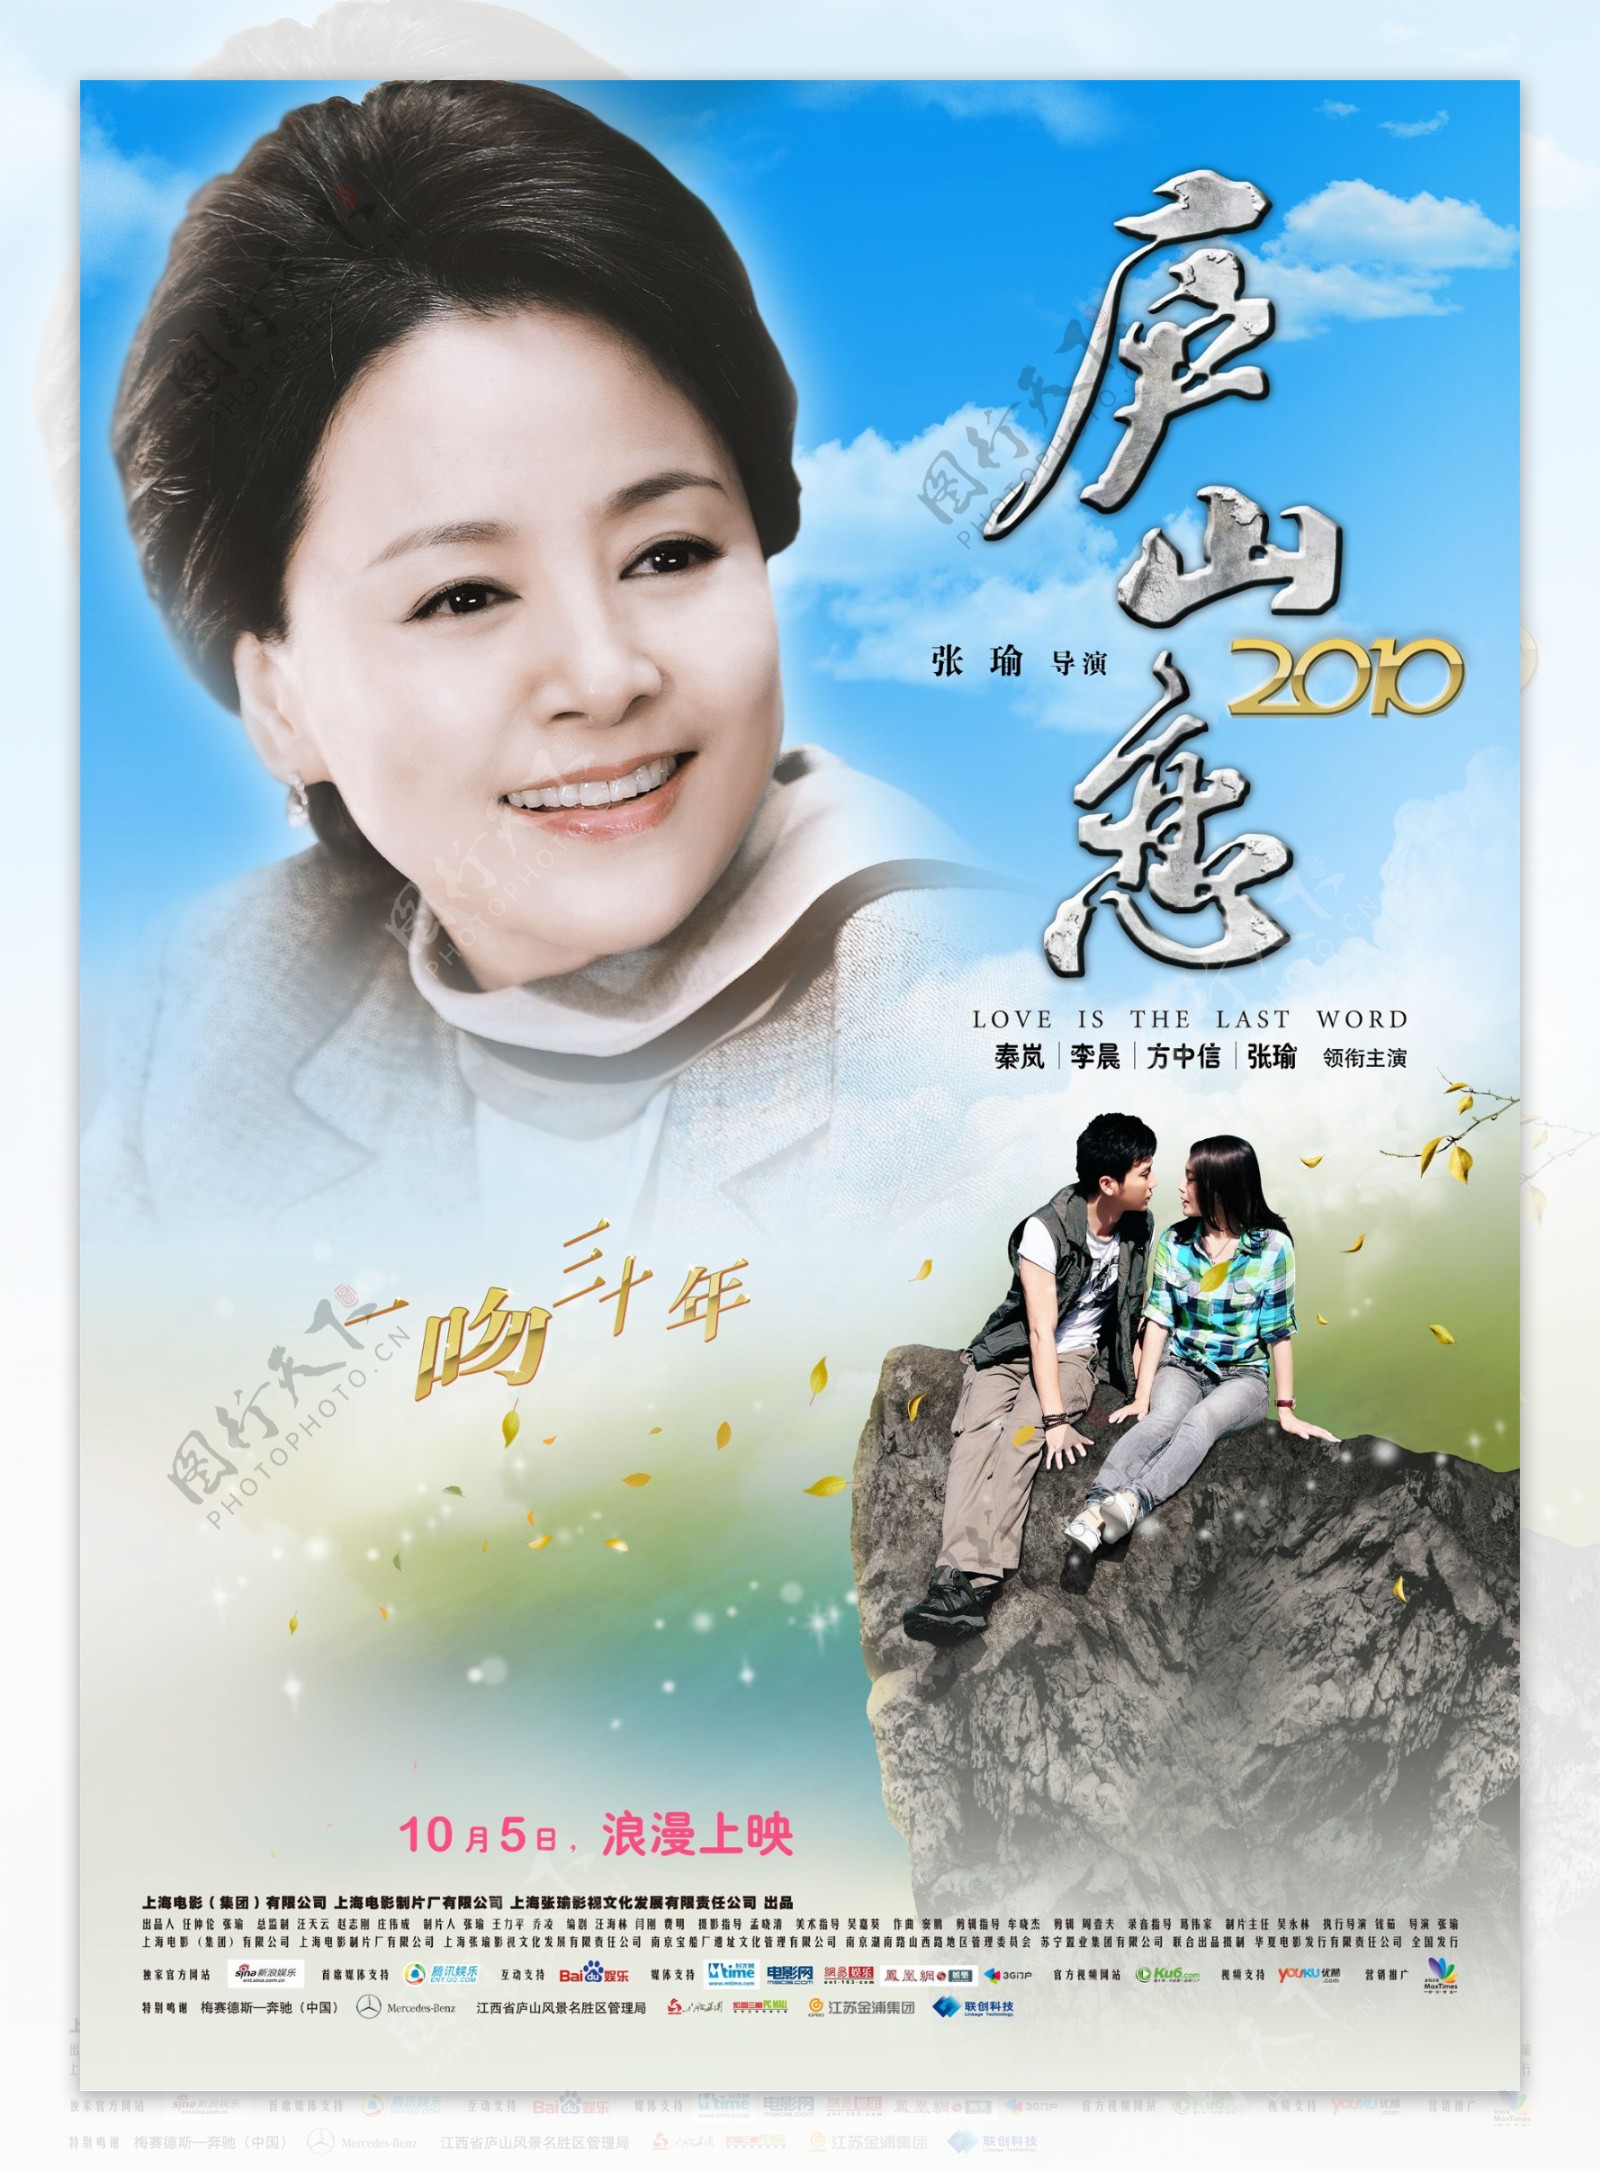 庐山恋2010高清原版电影海报图片